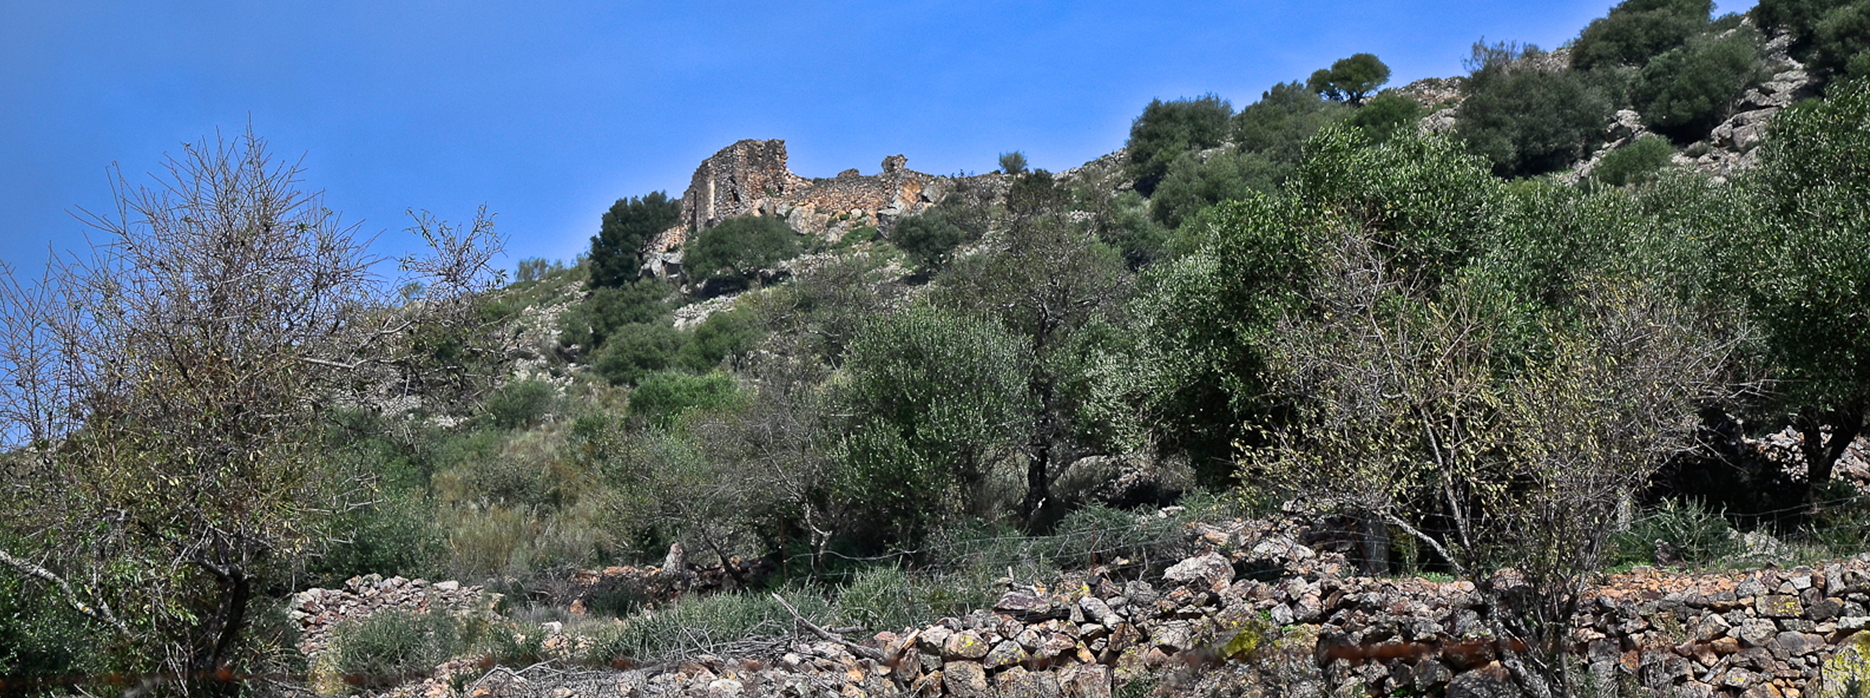 Castillo de Lares